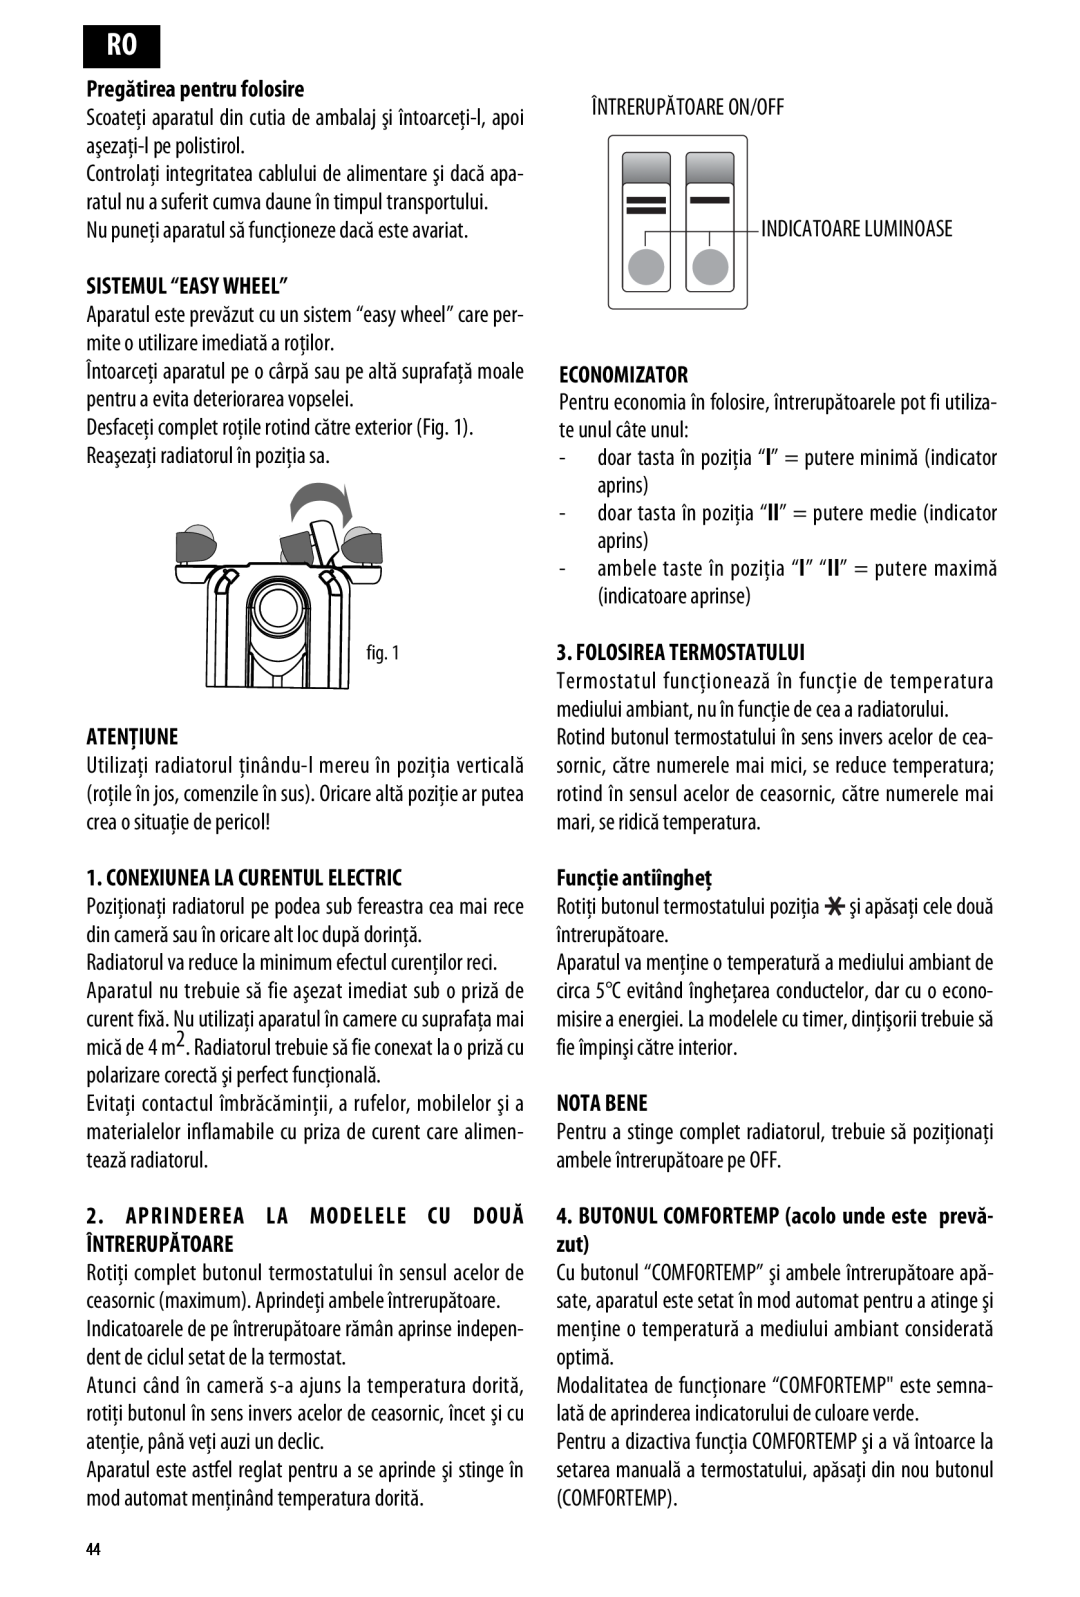 DeLonghi ME 10 Pregătirea pentru folosire, Sistemul “Easy Wheel”, Atenţiune, Conexiunea La Curentul Electric, Economizator 